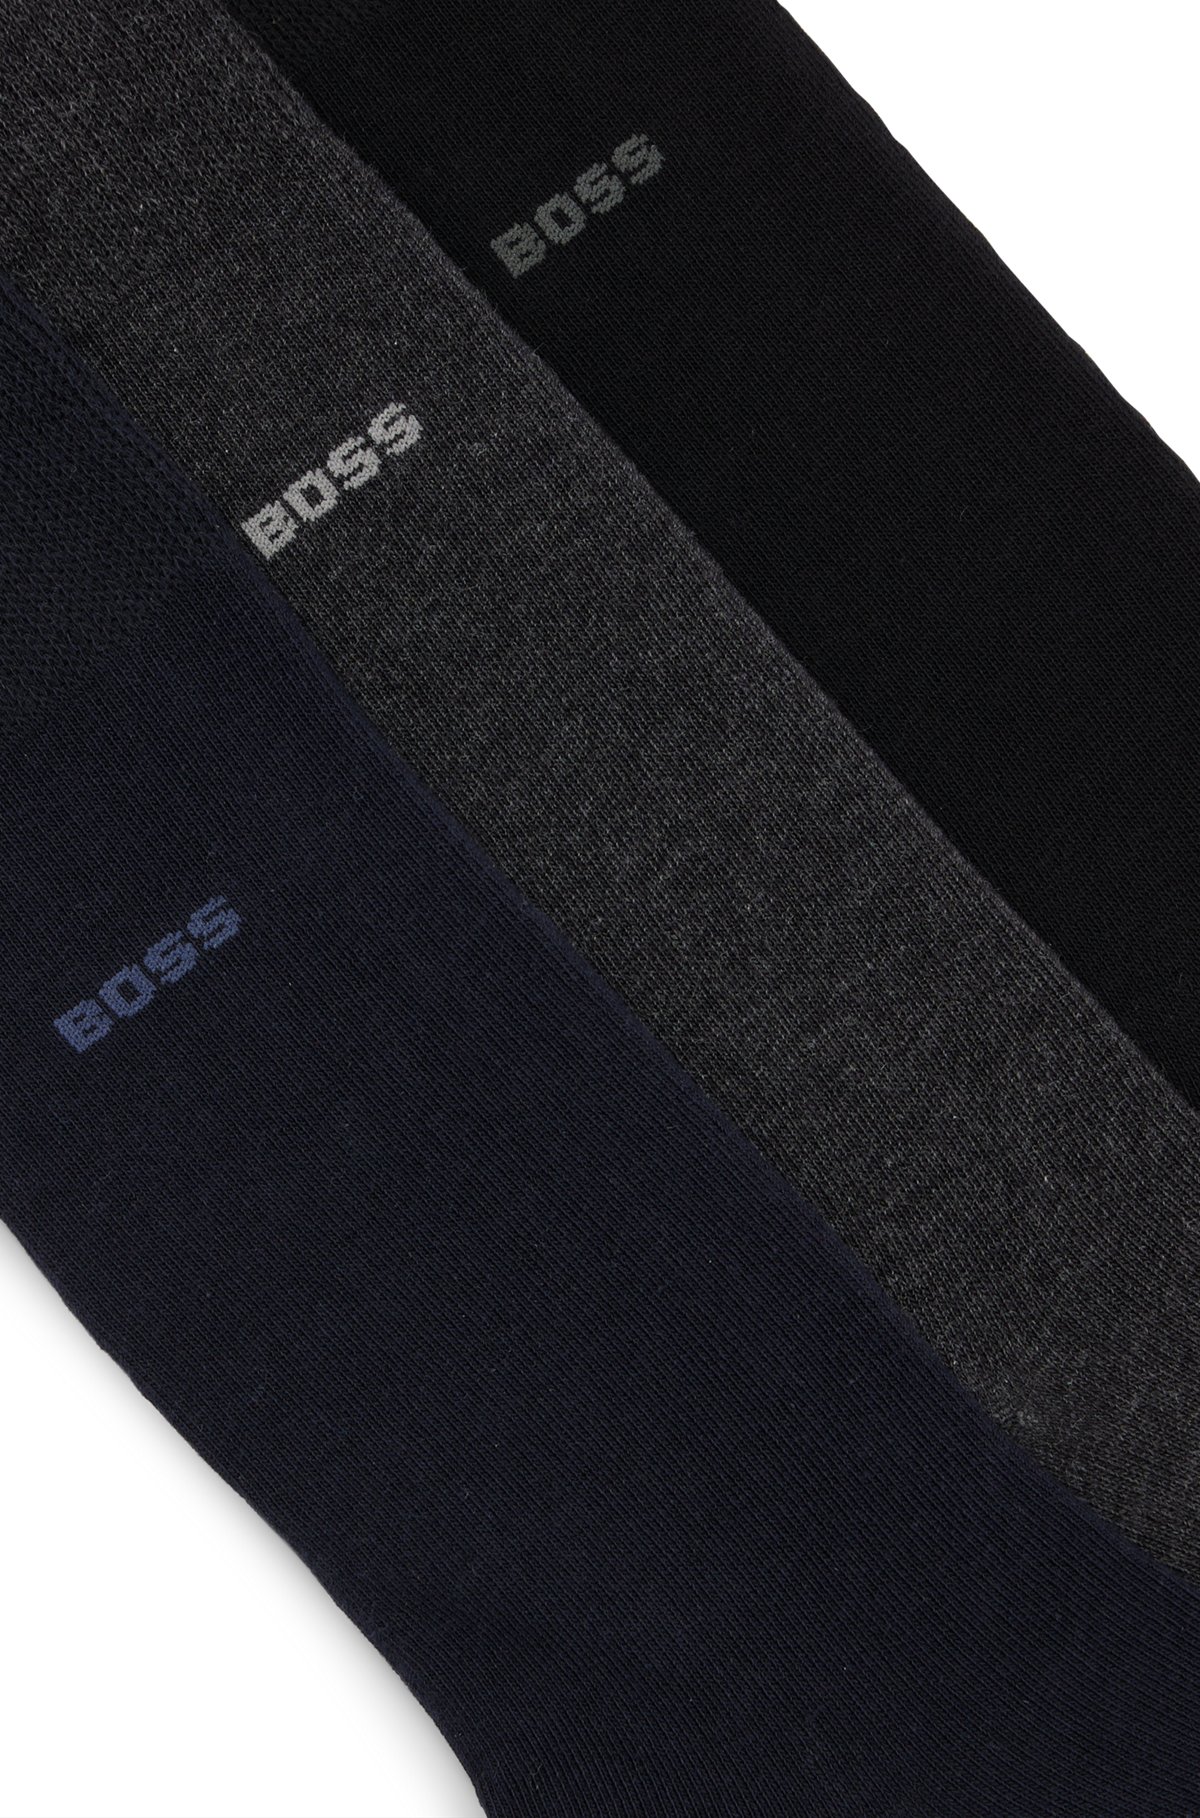 Conjunto de três pares de meias regulares em tecido elástico, Preto / Cinzento / Azul